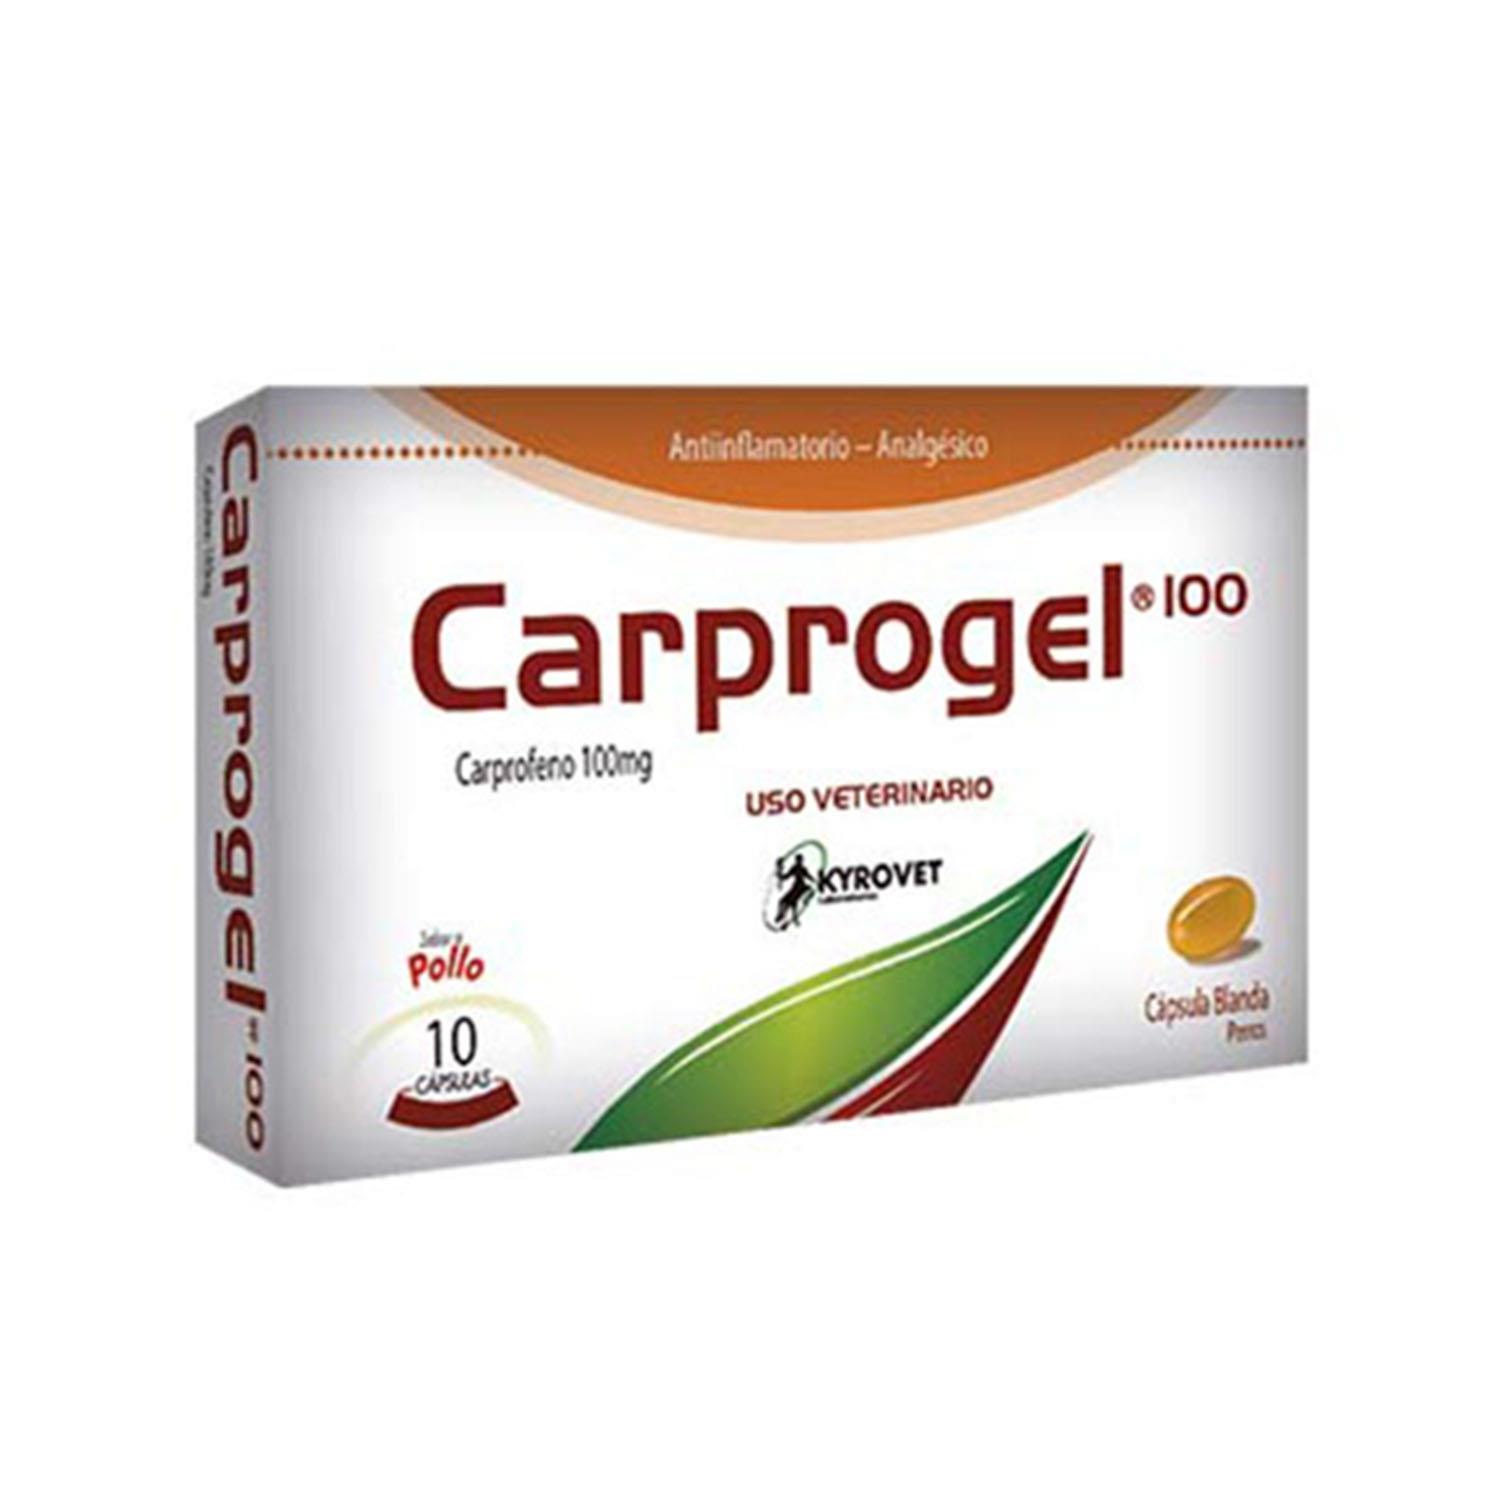 CARPROGEL 100 mg CAJA X 10...